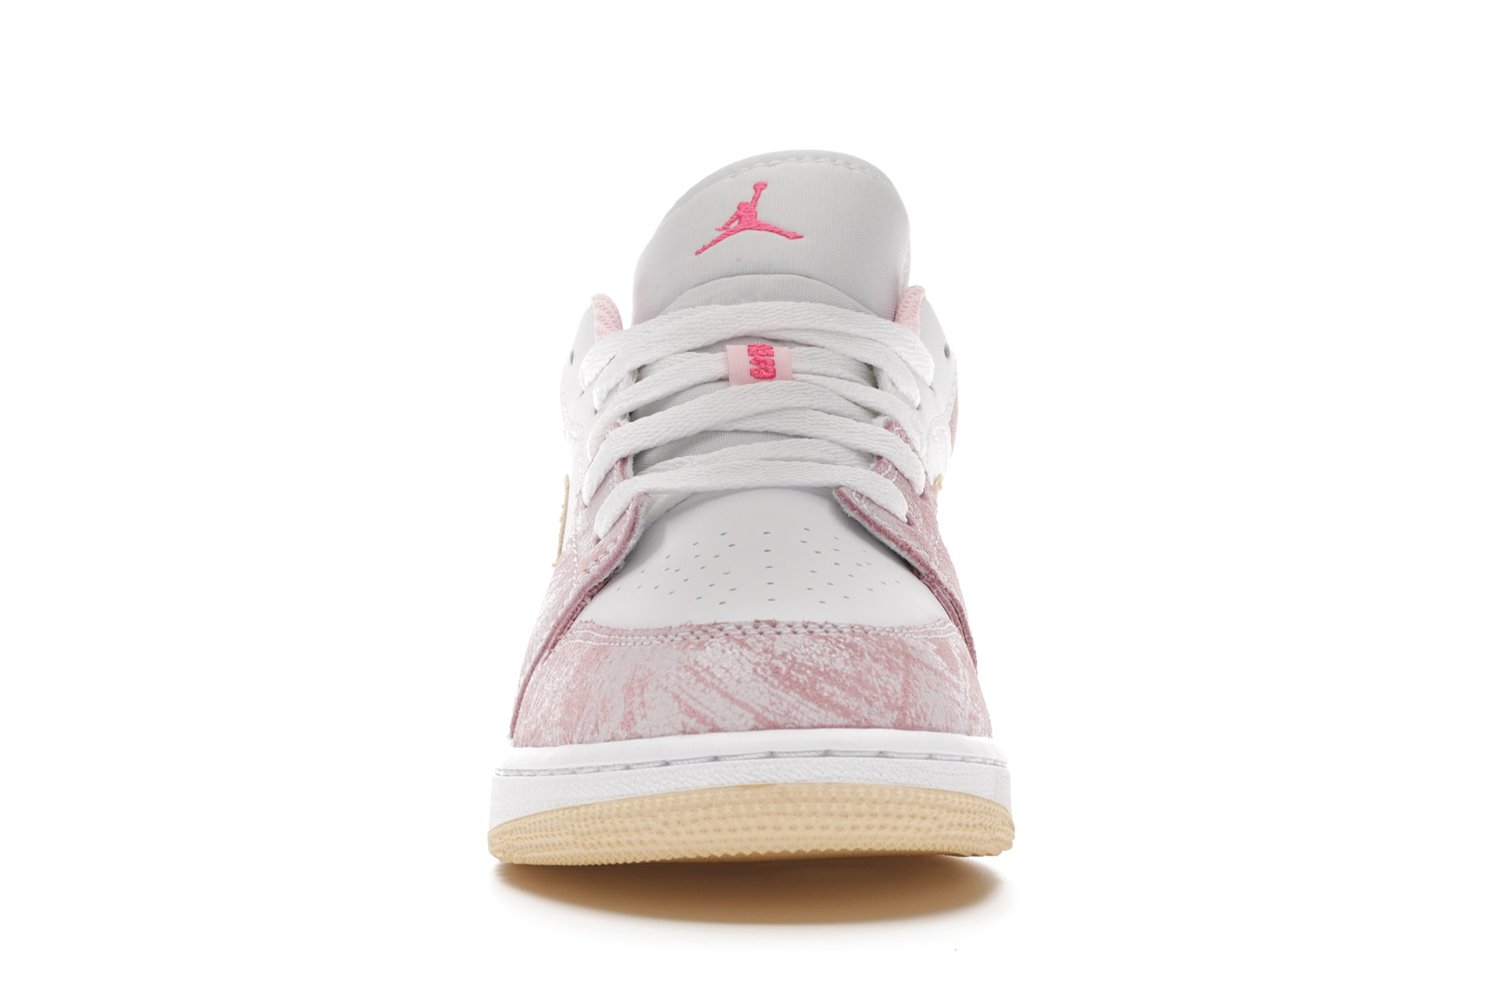 Image of Nike Jordan 1 Low "Paint Drip" 